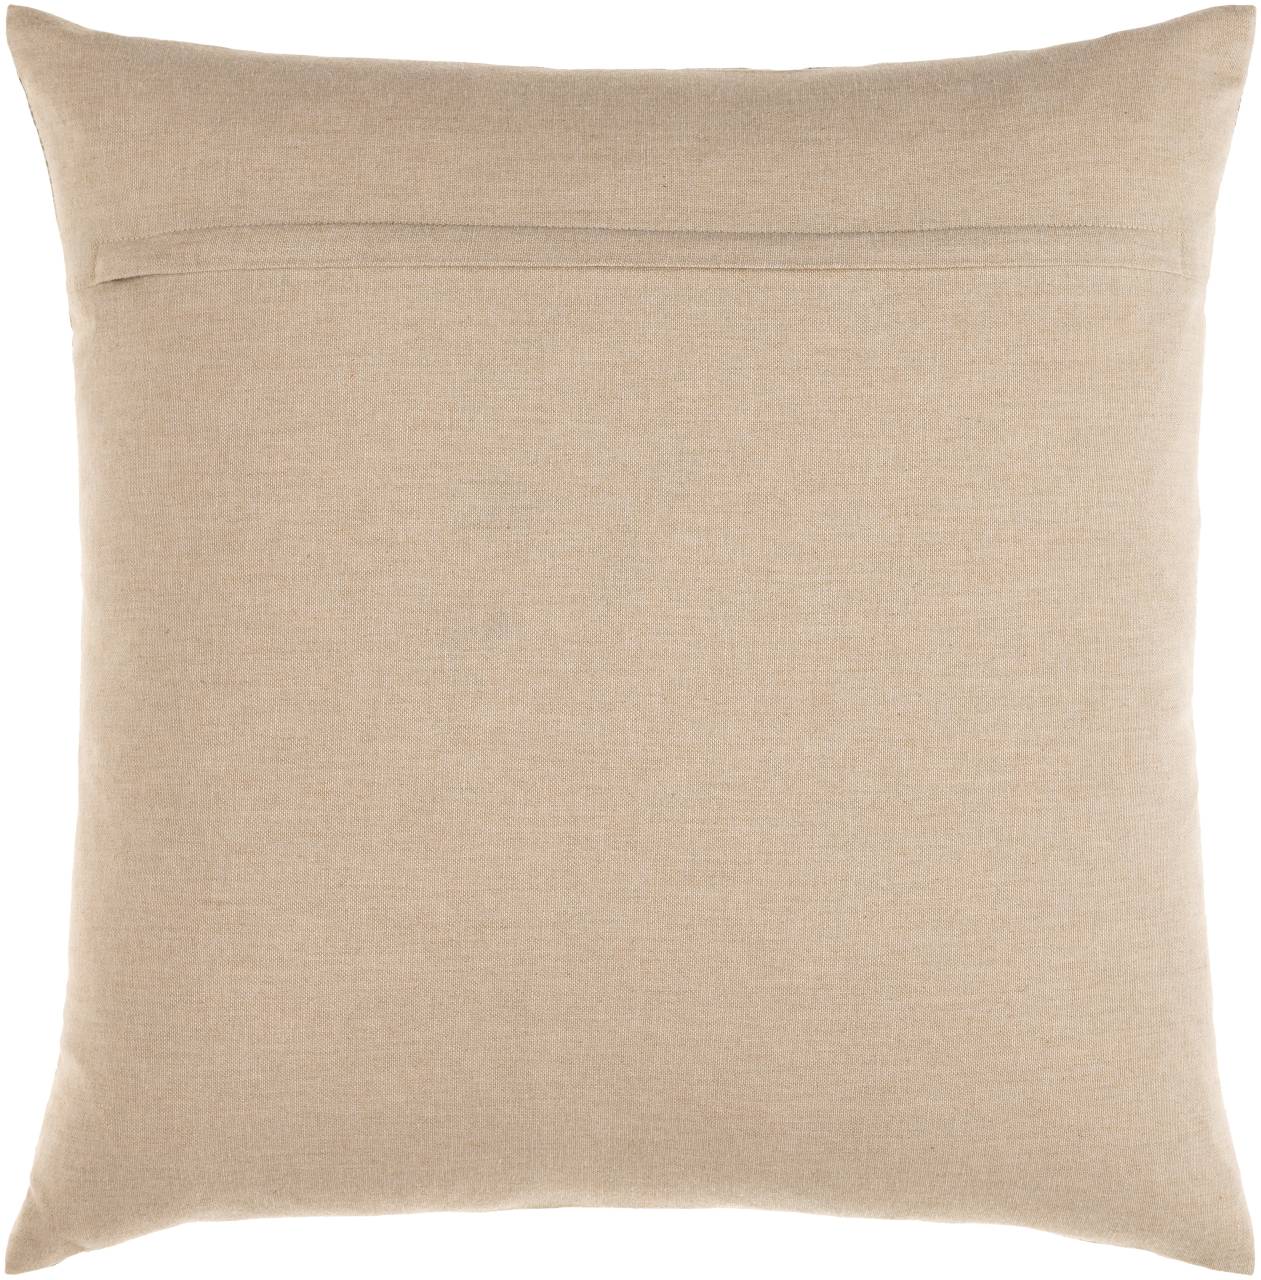 Pfaffstatt Charcoal Pillow Cover